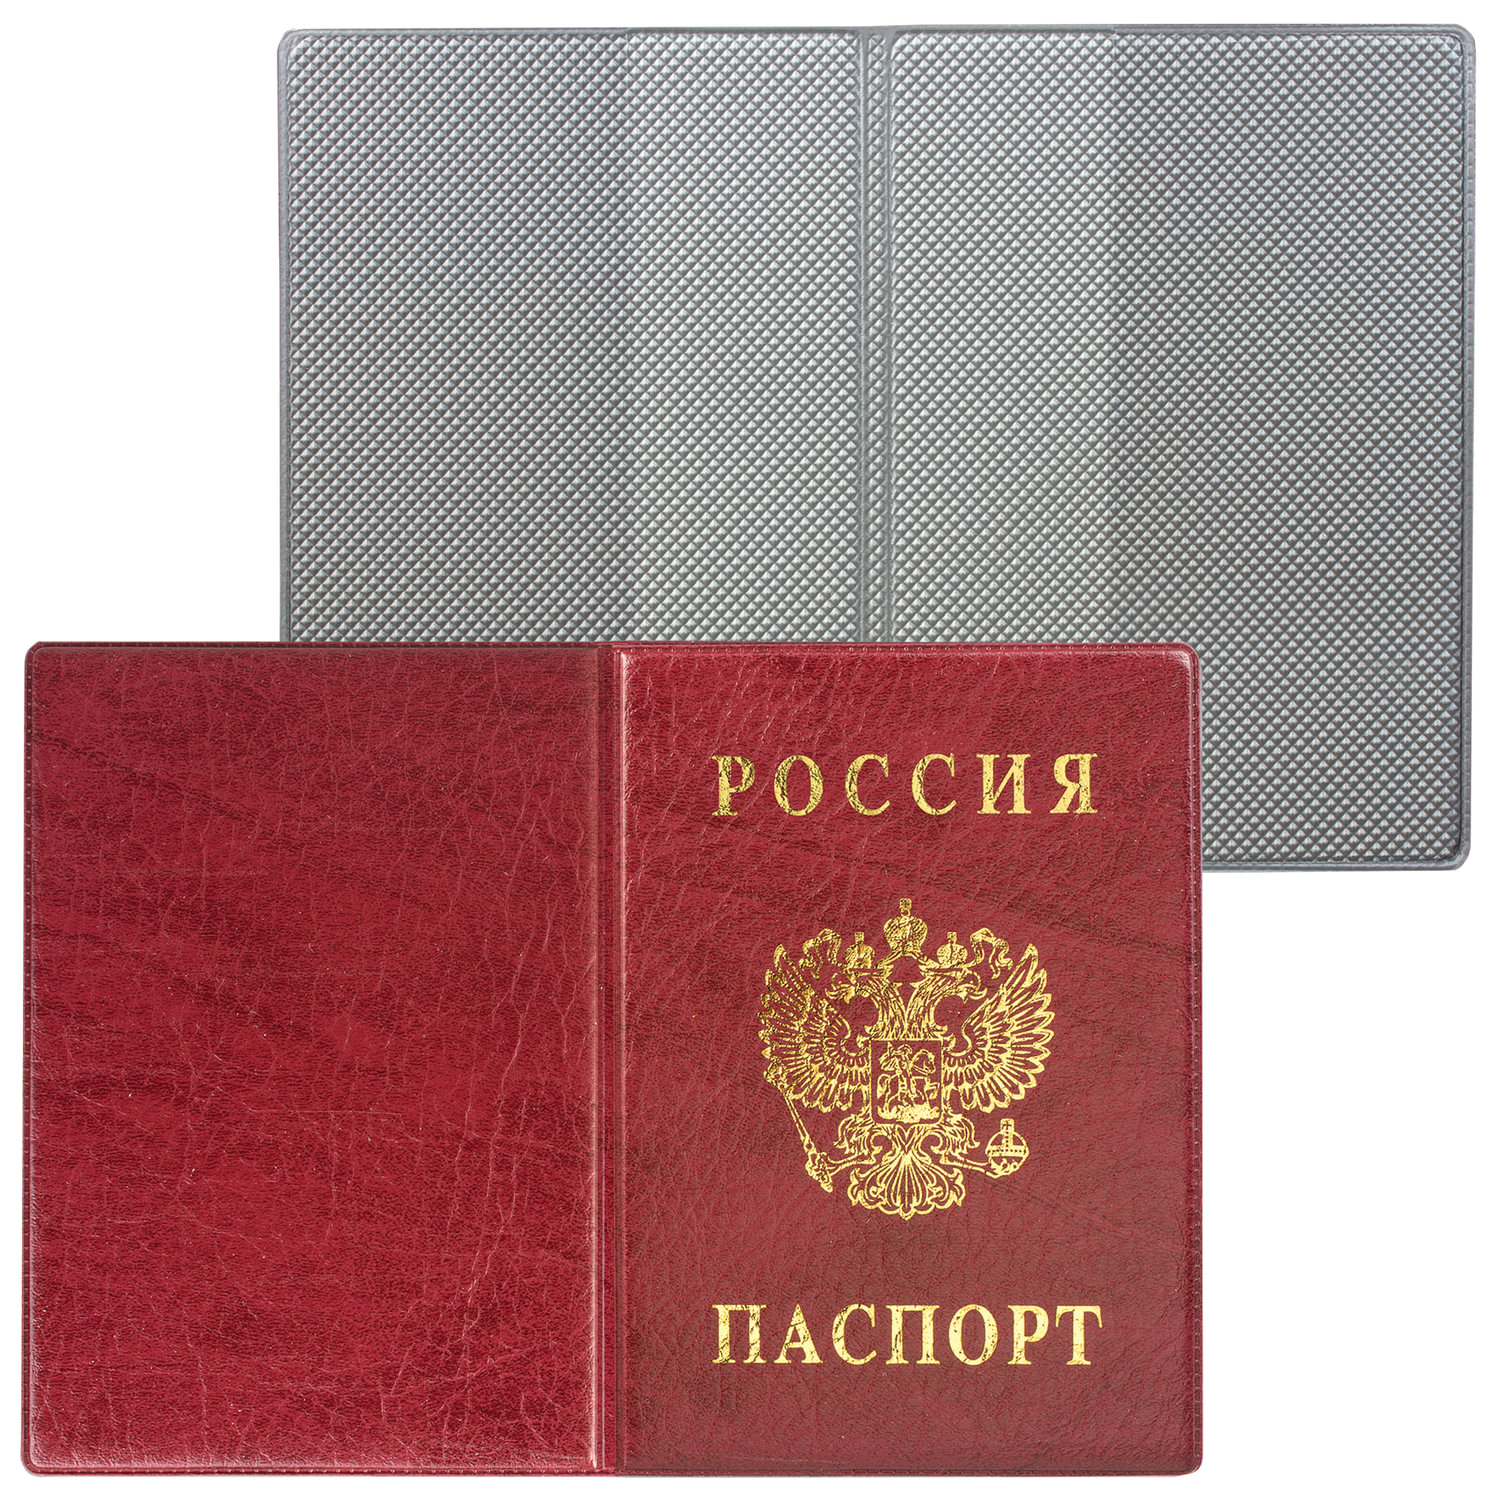 Обложка для паспорта с гербом, ПВХ, бордовая, ДПС, 2203.В-103, (12 шт.)